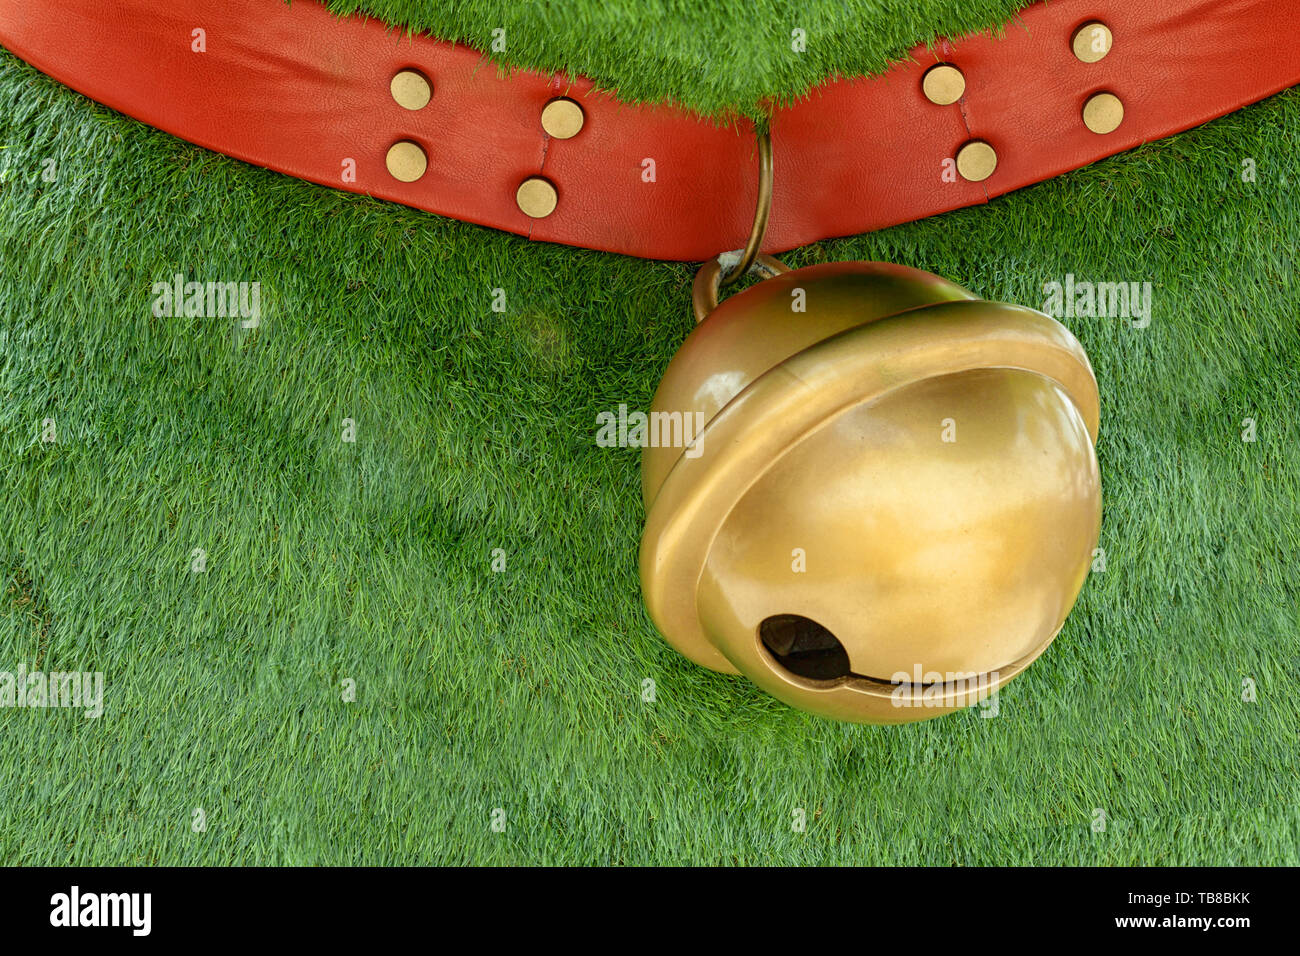 Collier pour chien rouge faits de cuir décorer avec les axes pendaison big golden bell sur fond d'herbe verte with copy space Banque D'Images